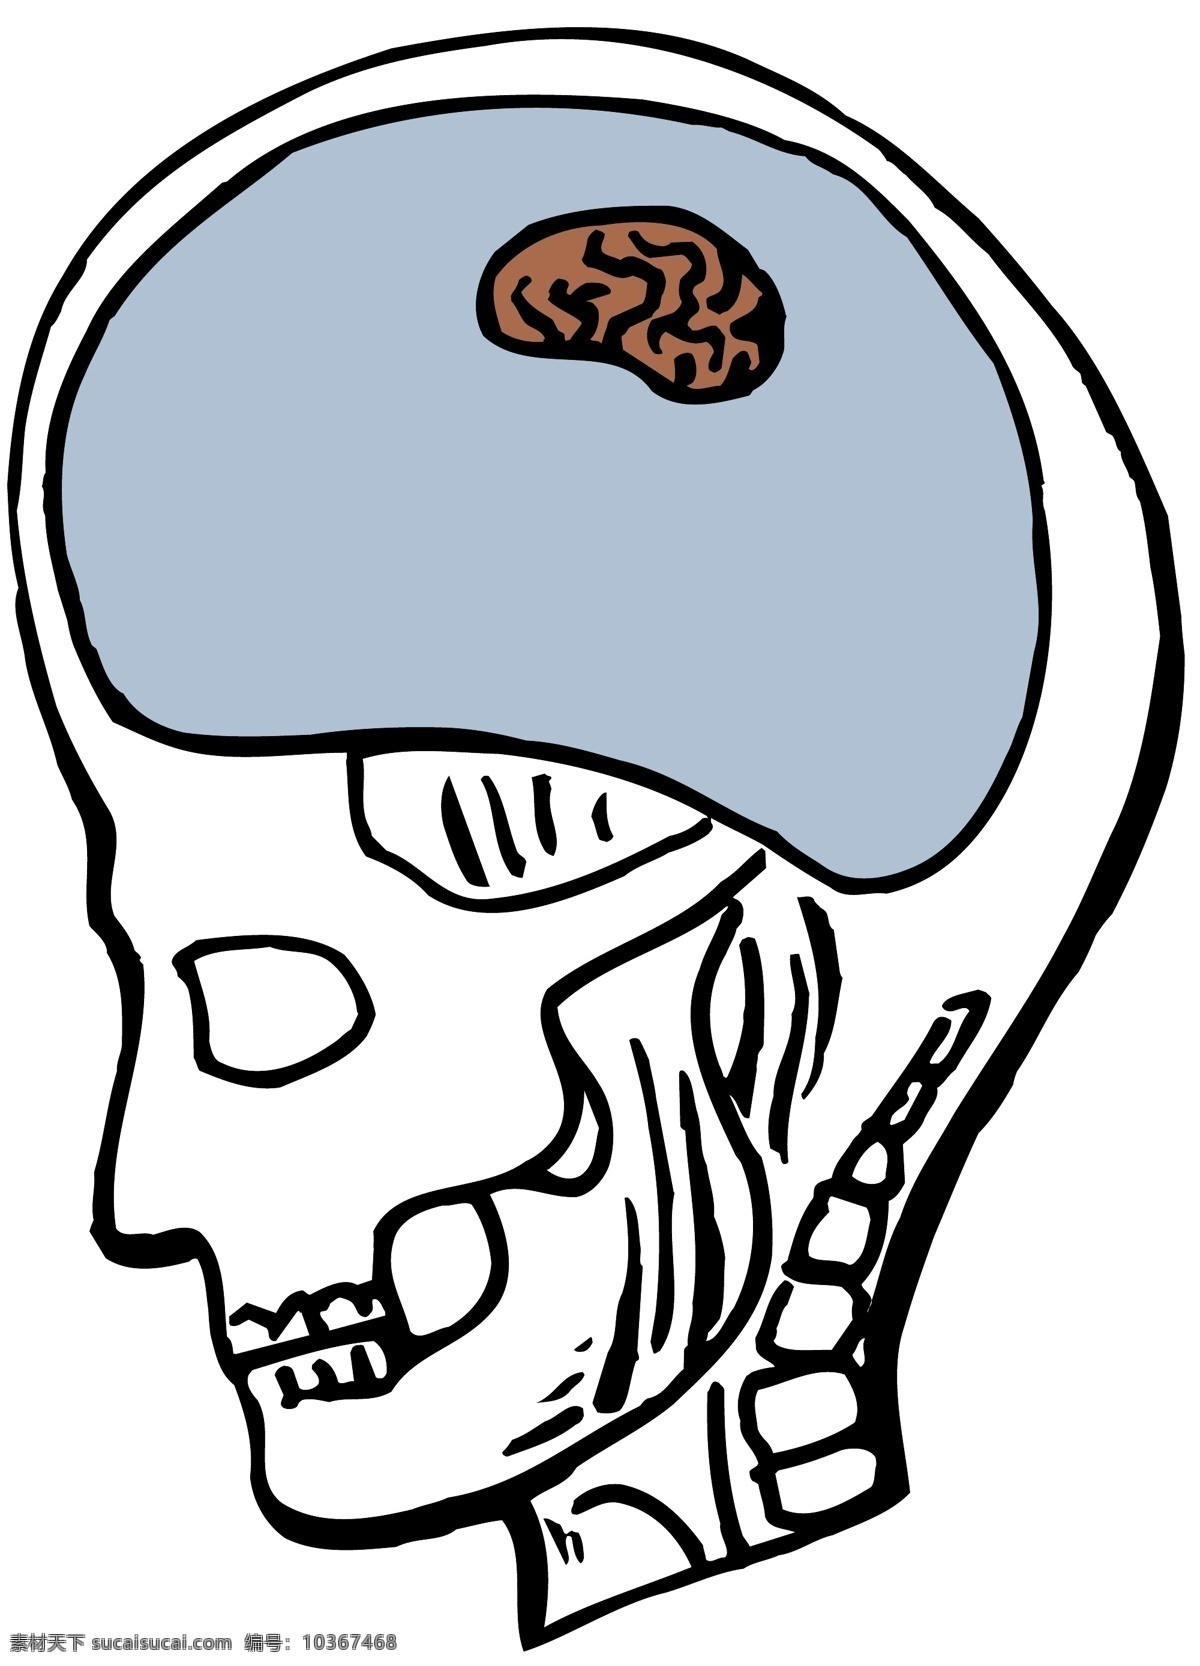 头颅 大脑 医用模型 矢量素材 eps0044 设计素材 结构模型 医疗卫生 矢量图库 白色